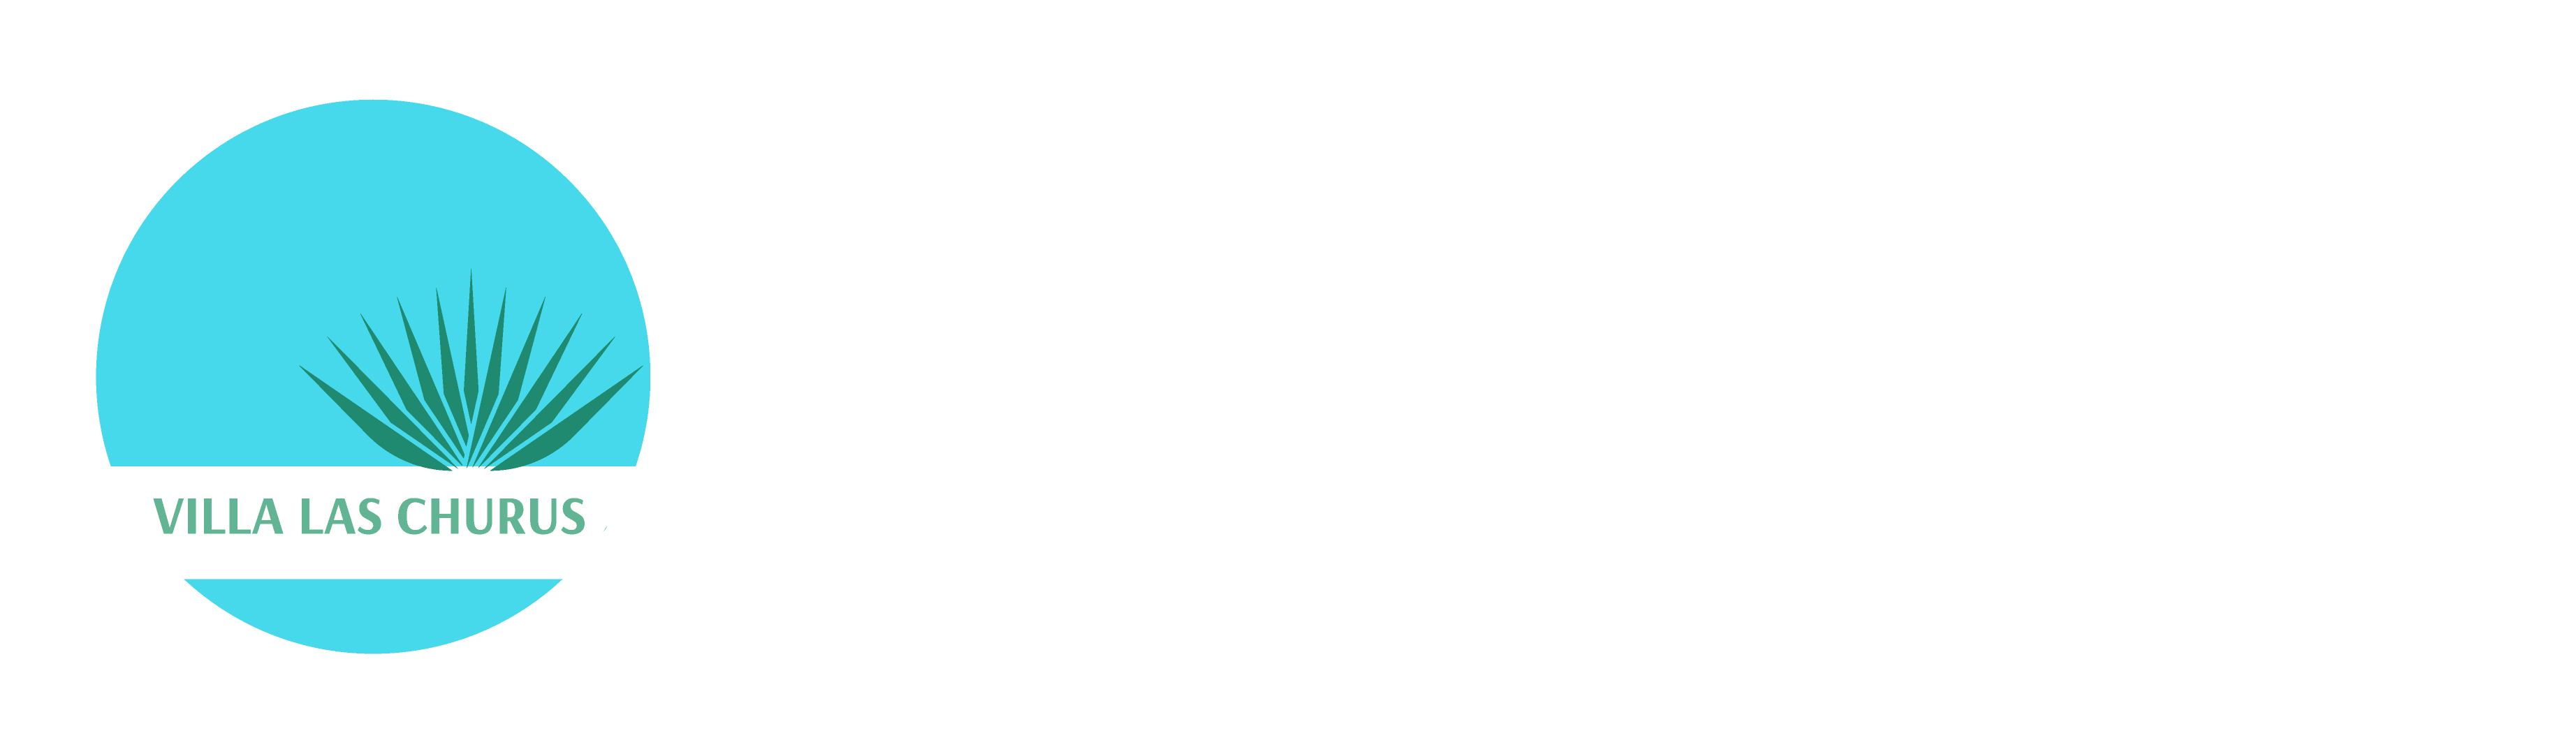 Villa las churus